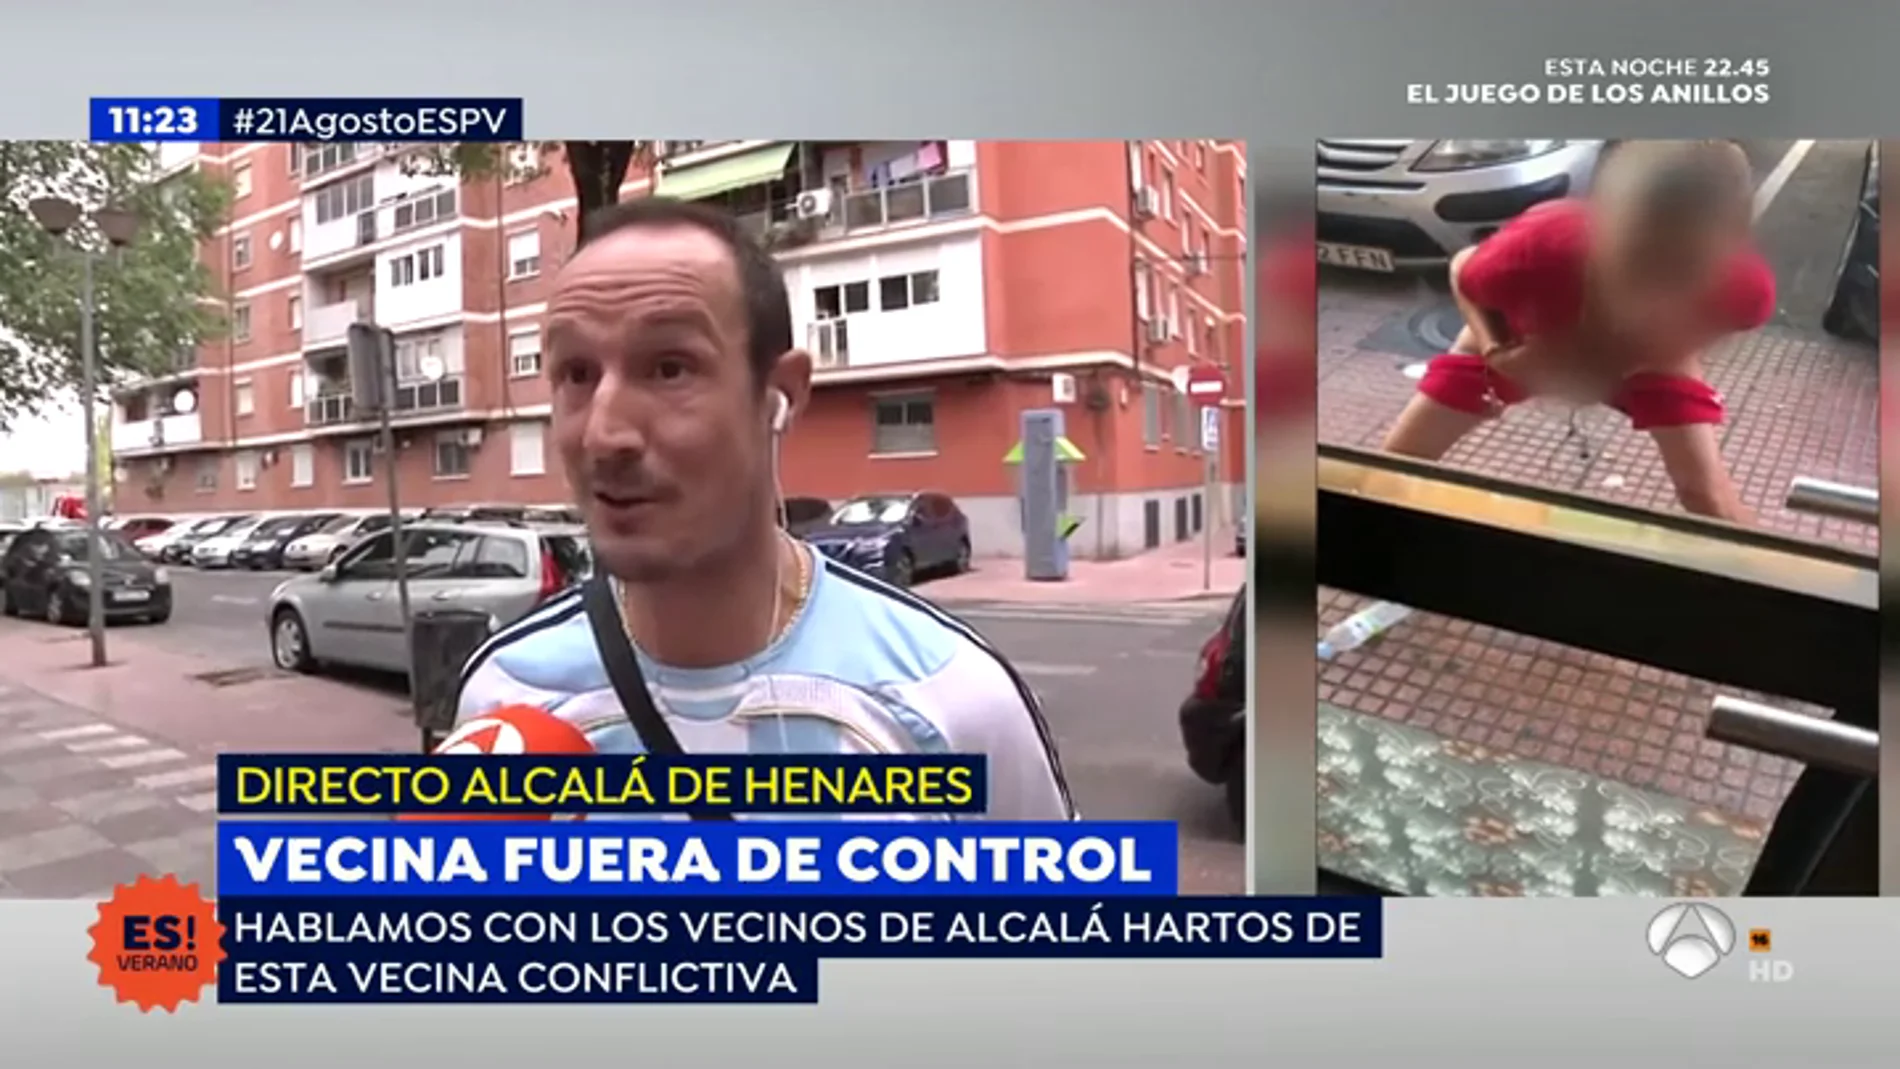 Los vecinos de Alcalá de Henares hablan sobre la vecina fuera de control